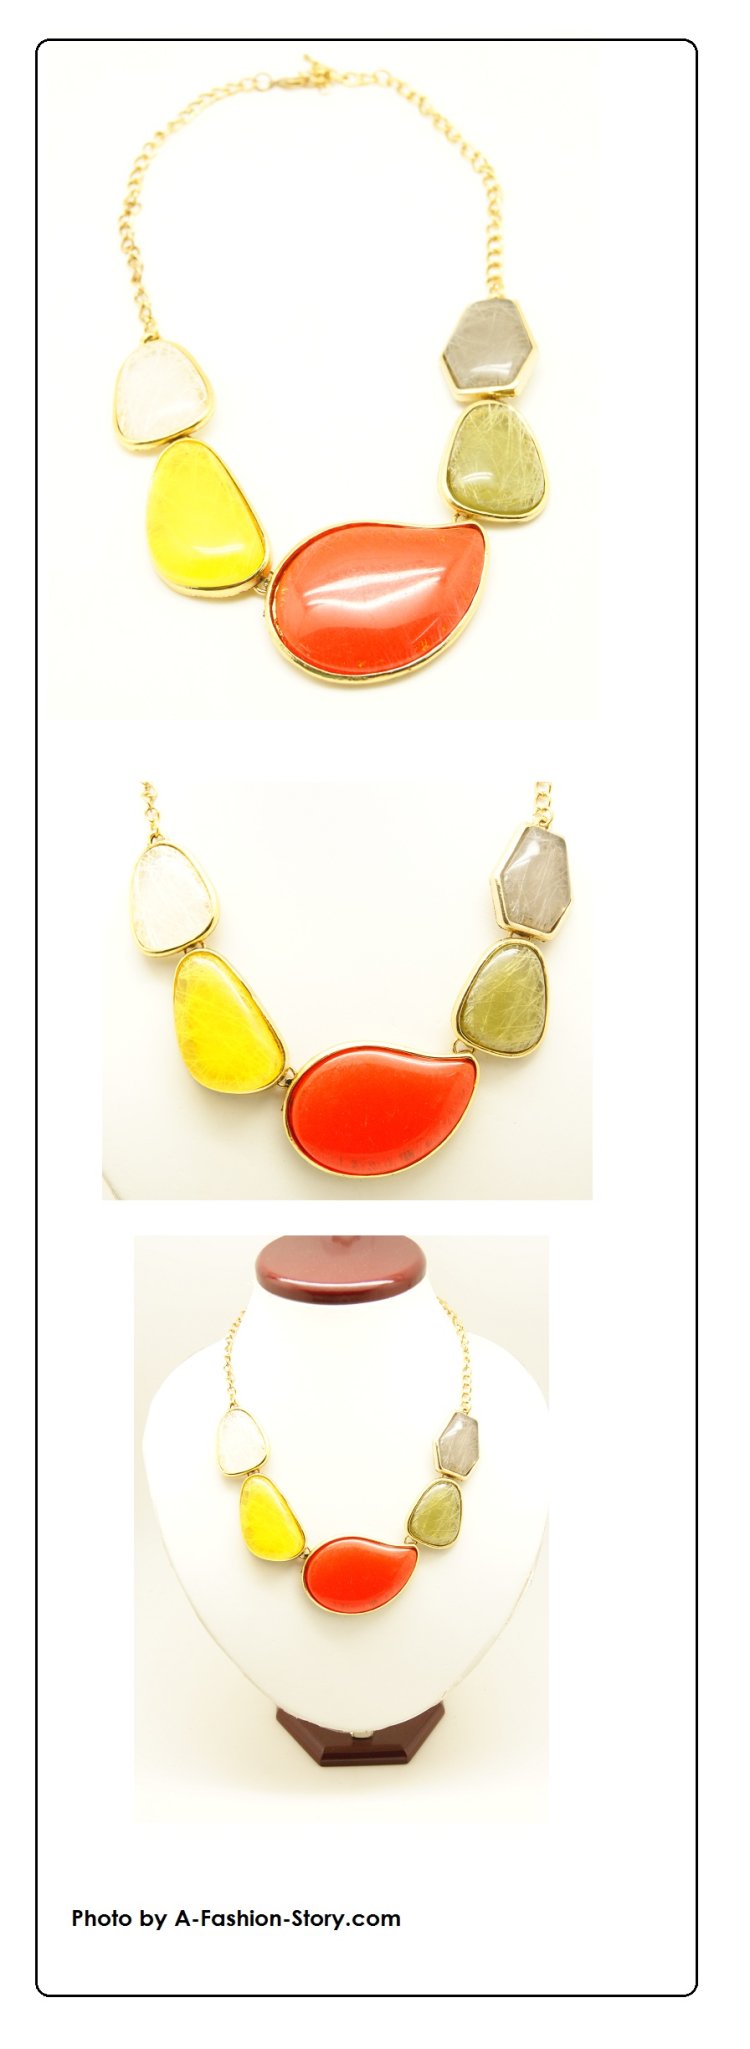 P92784 Colourful beads choker necklace korean wholesale blogshop